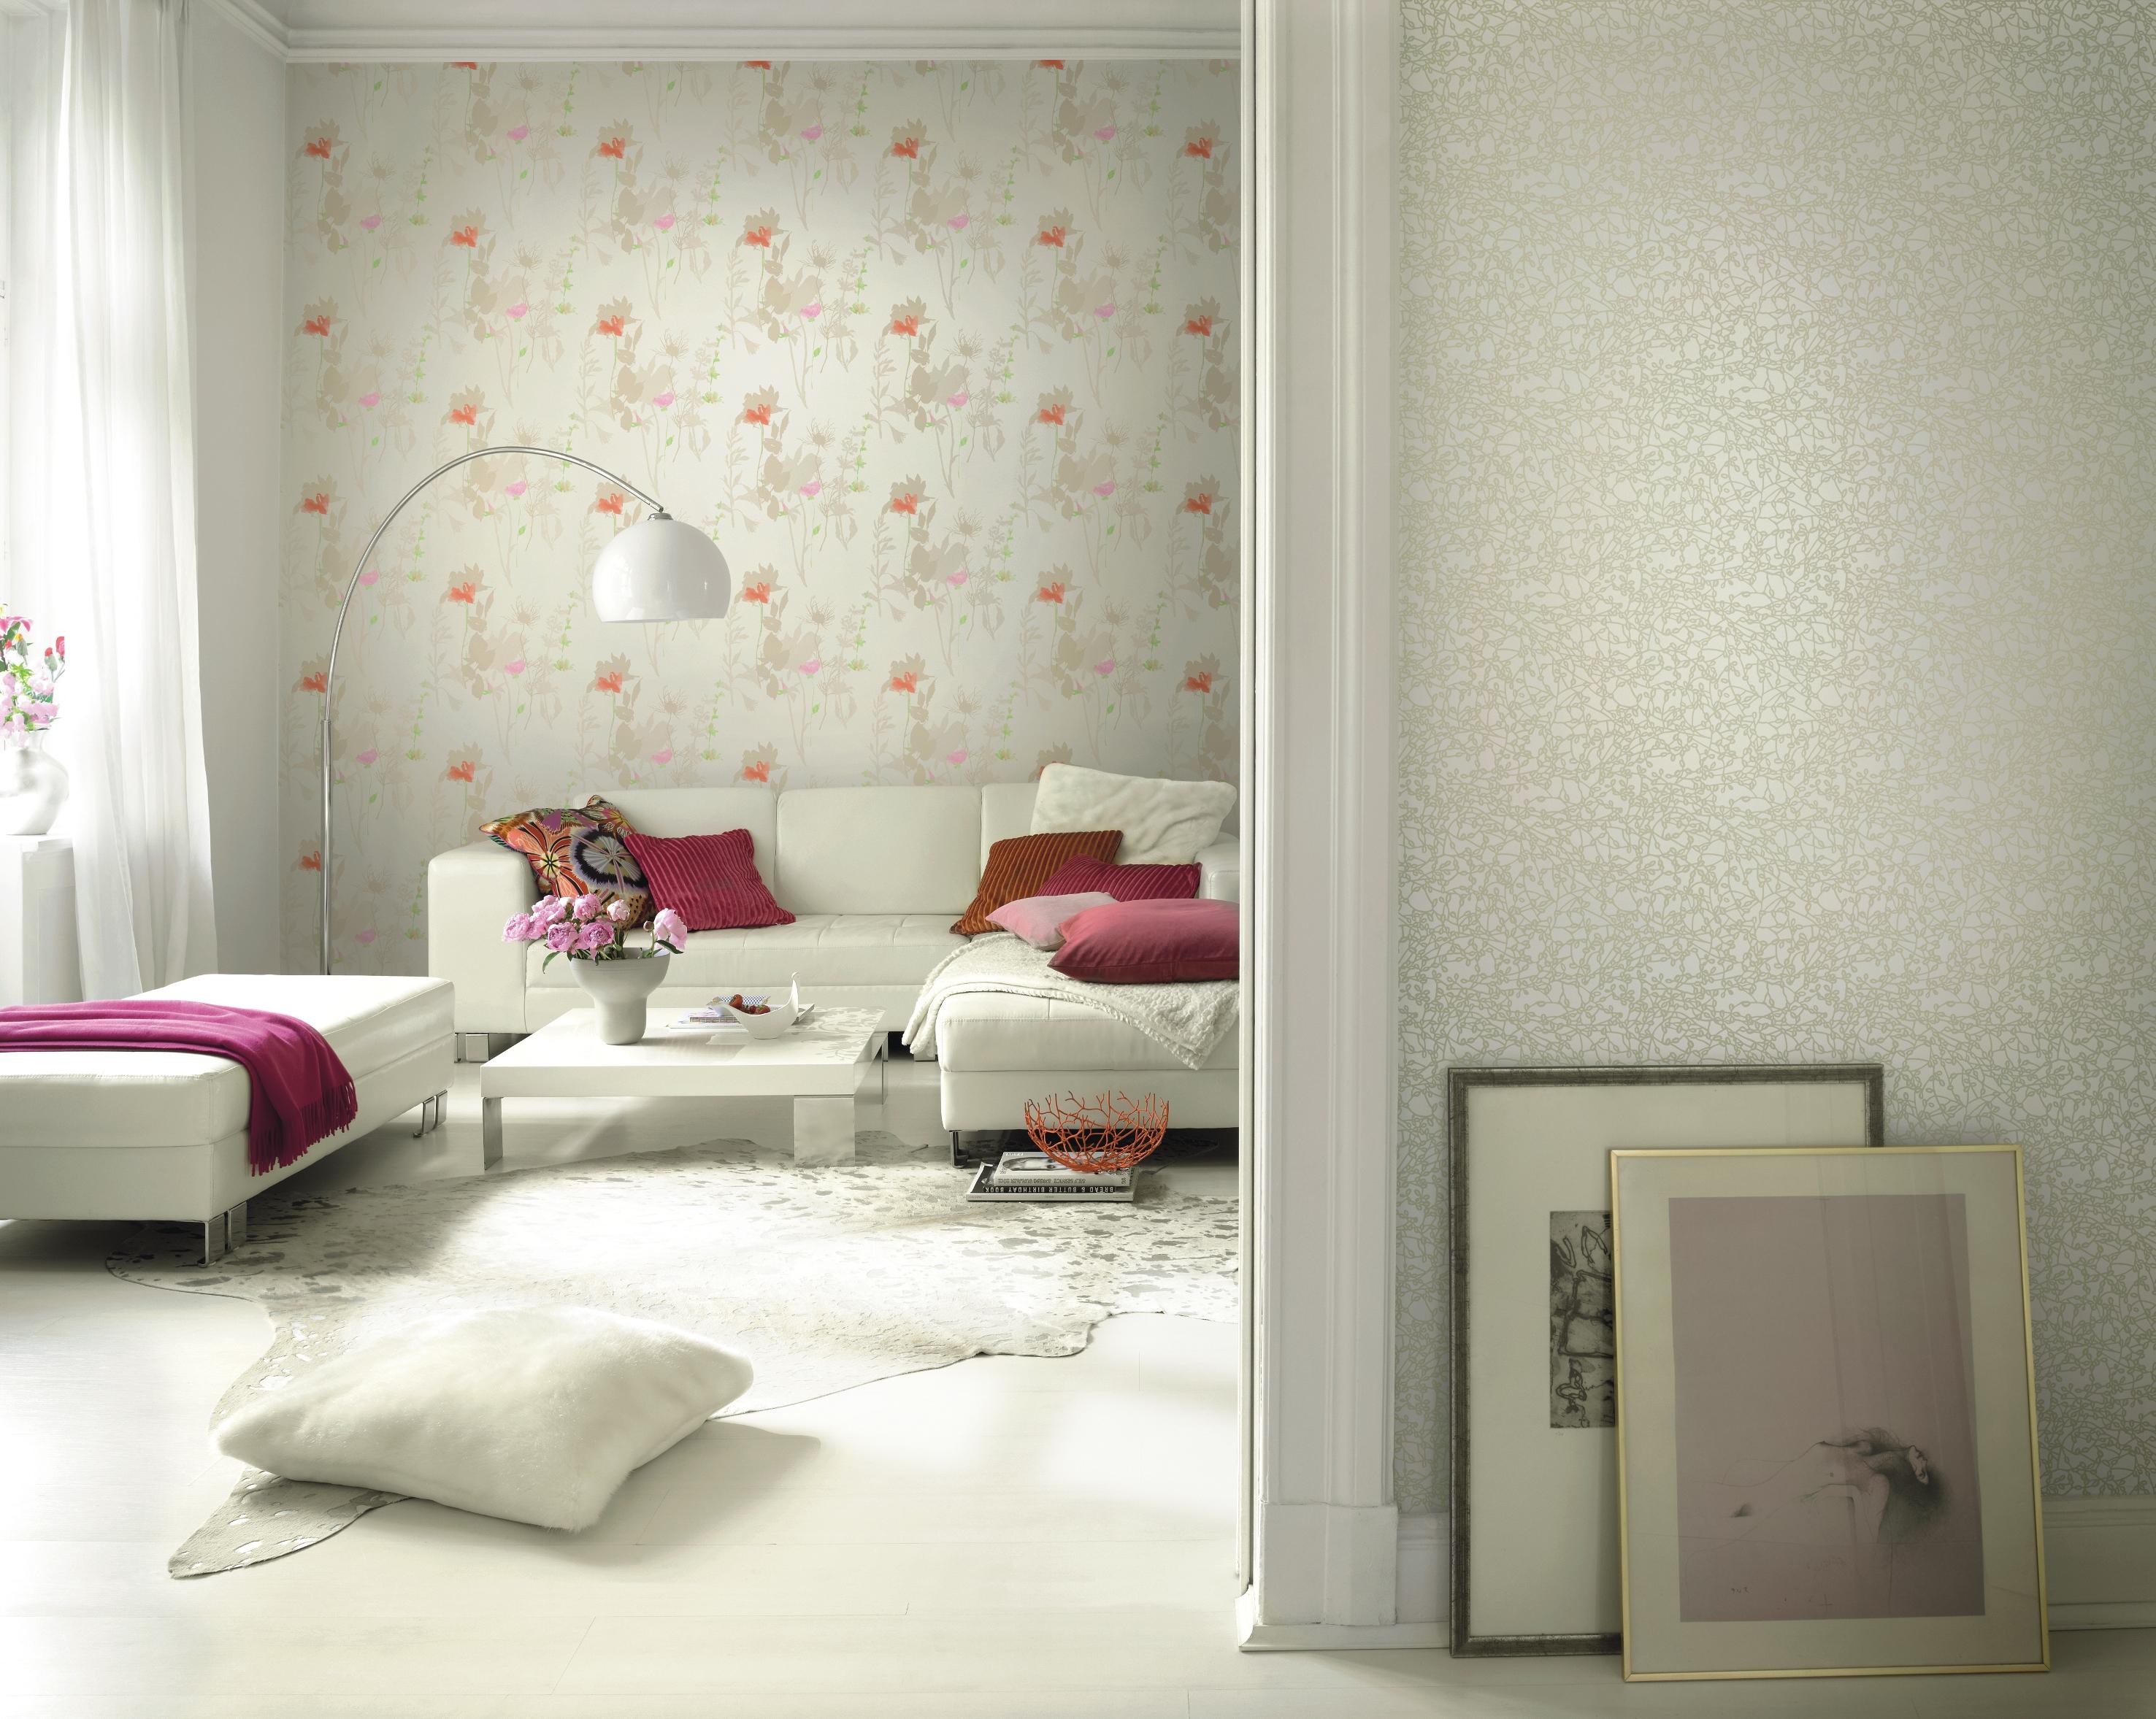 Romantisches Wohnzimmer mit roten Dekoartikeln #bogenlampe #wandgestaltung #sofakissen #blumentapete #tapete ©Rasch